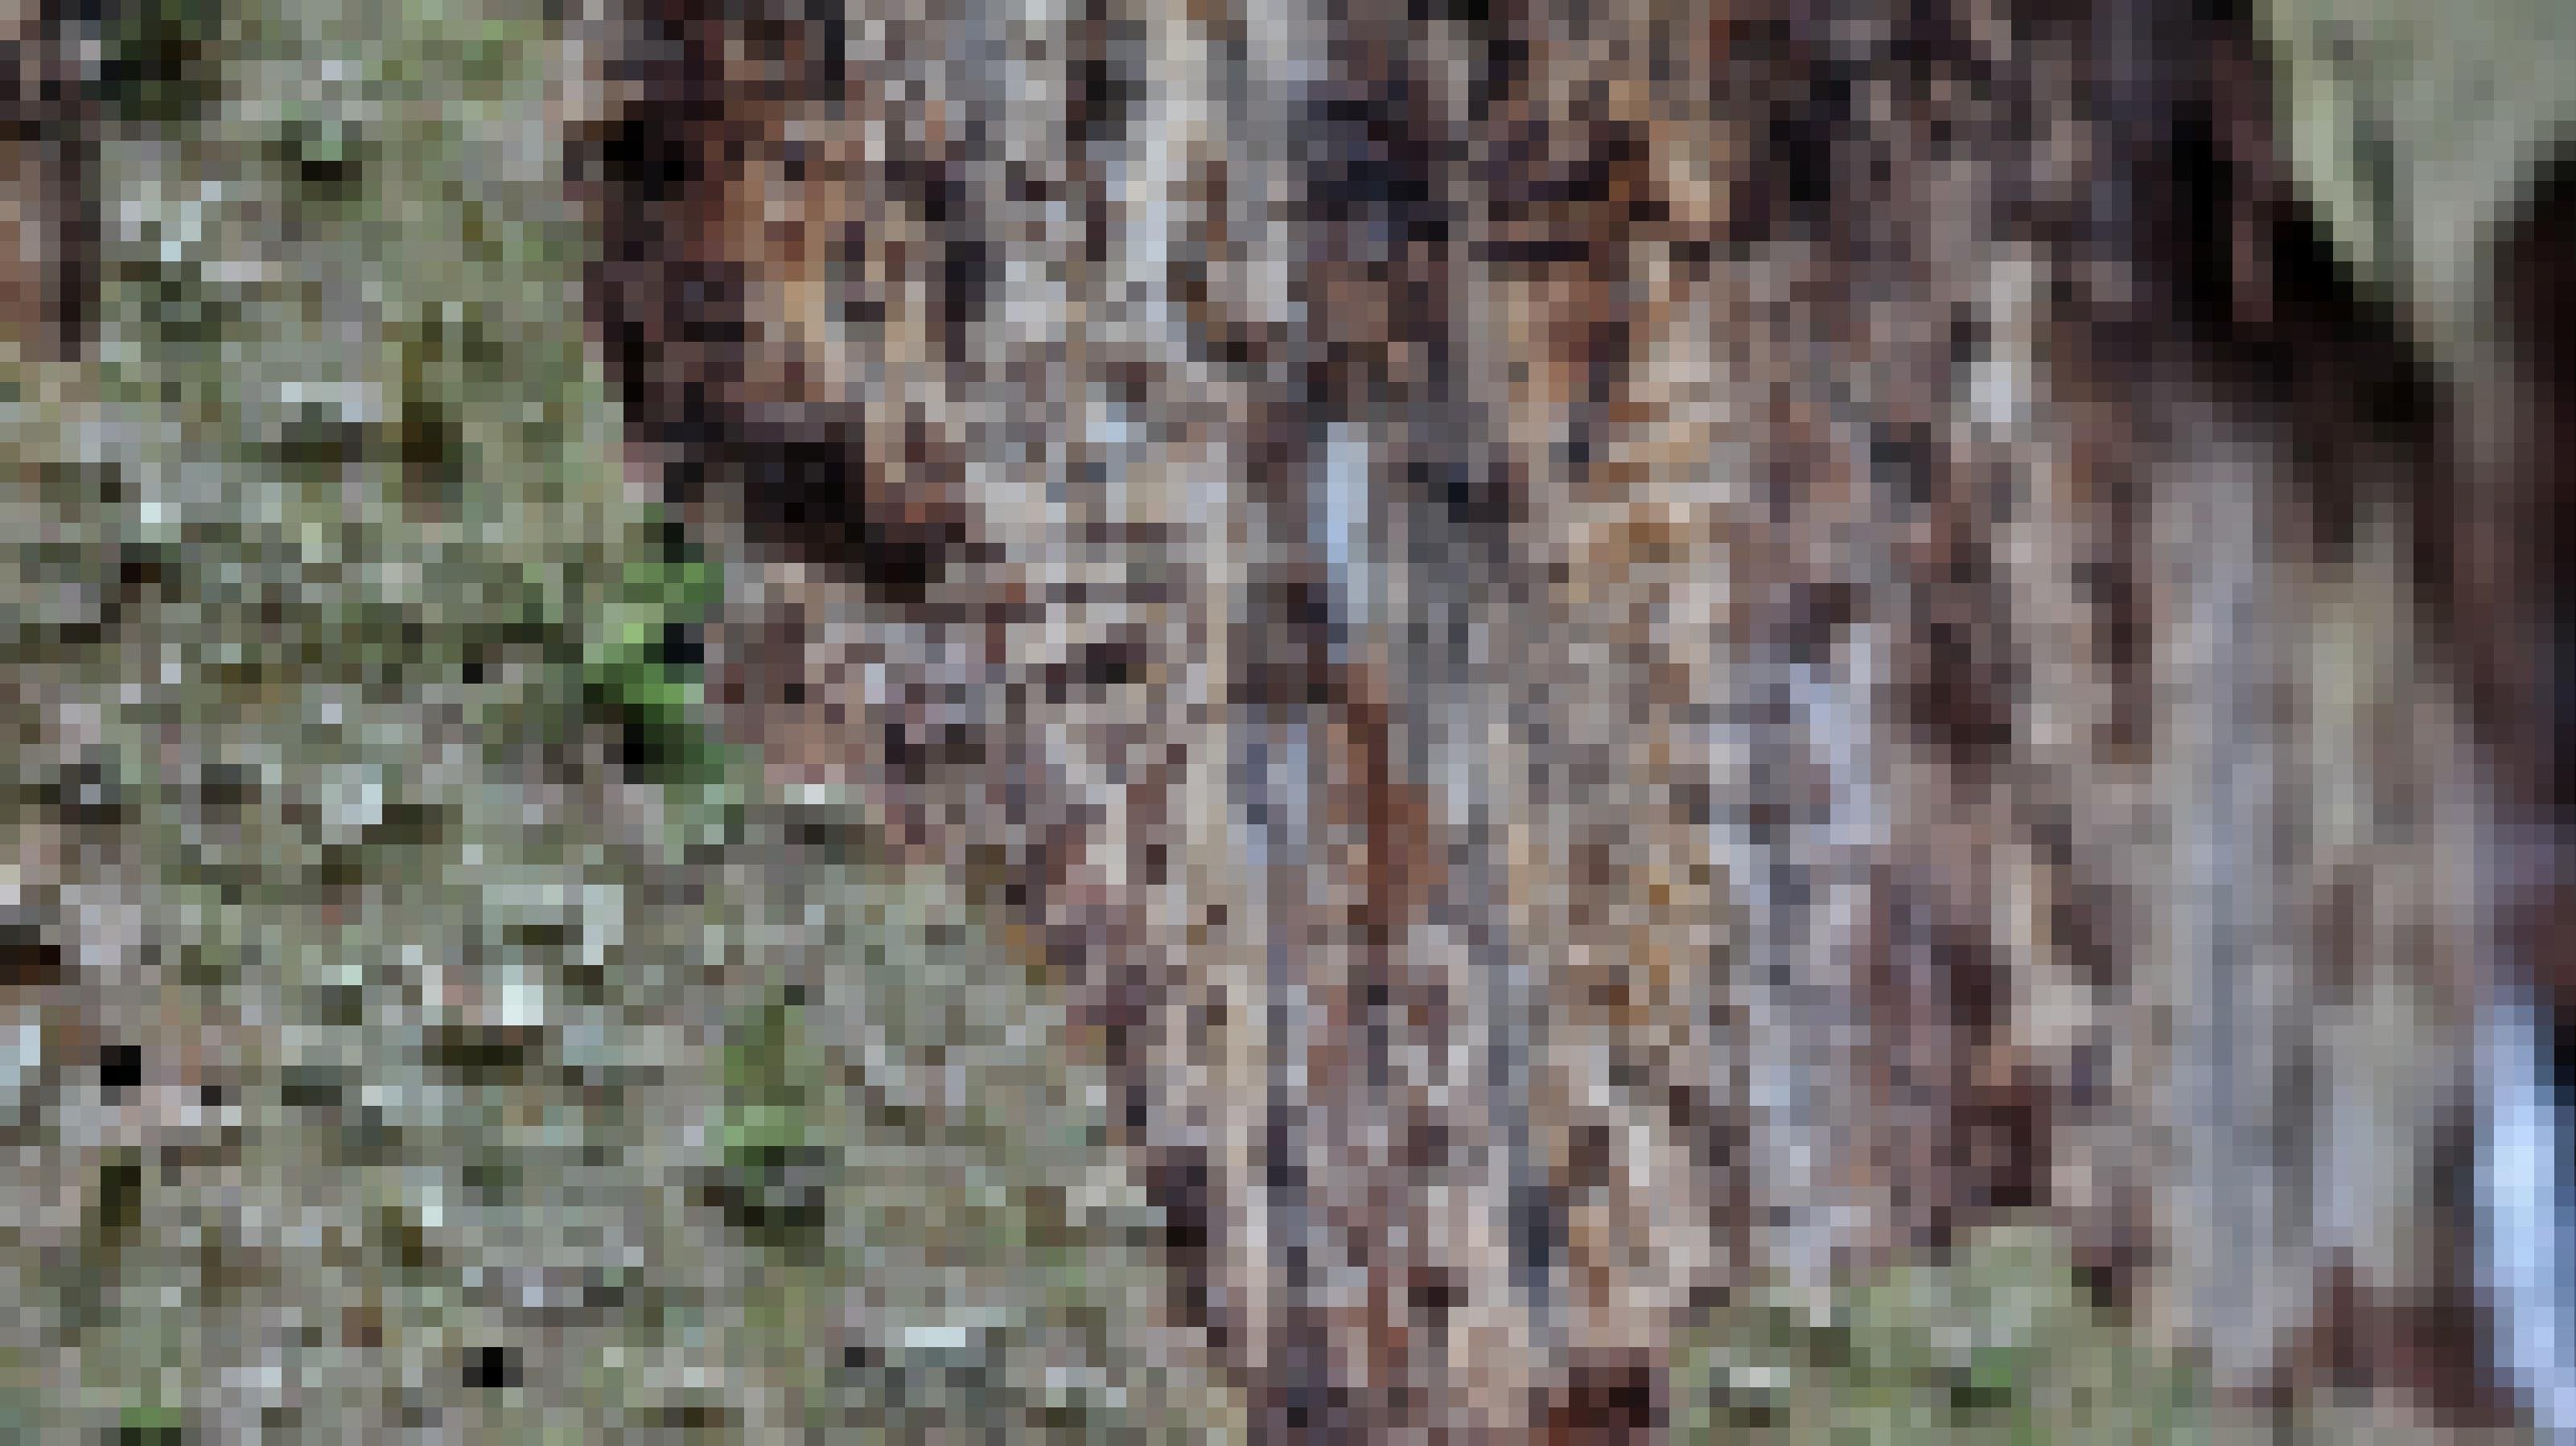 In der grün-grauen, schuppigen Rinde der Fichte sind zahlreiche Löcher zu erkennen. Wo die Rinde bereits fehlt, zeigen sich Gänge im gelblich-braunen Holz.